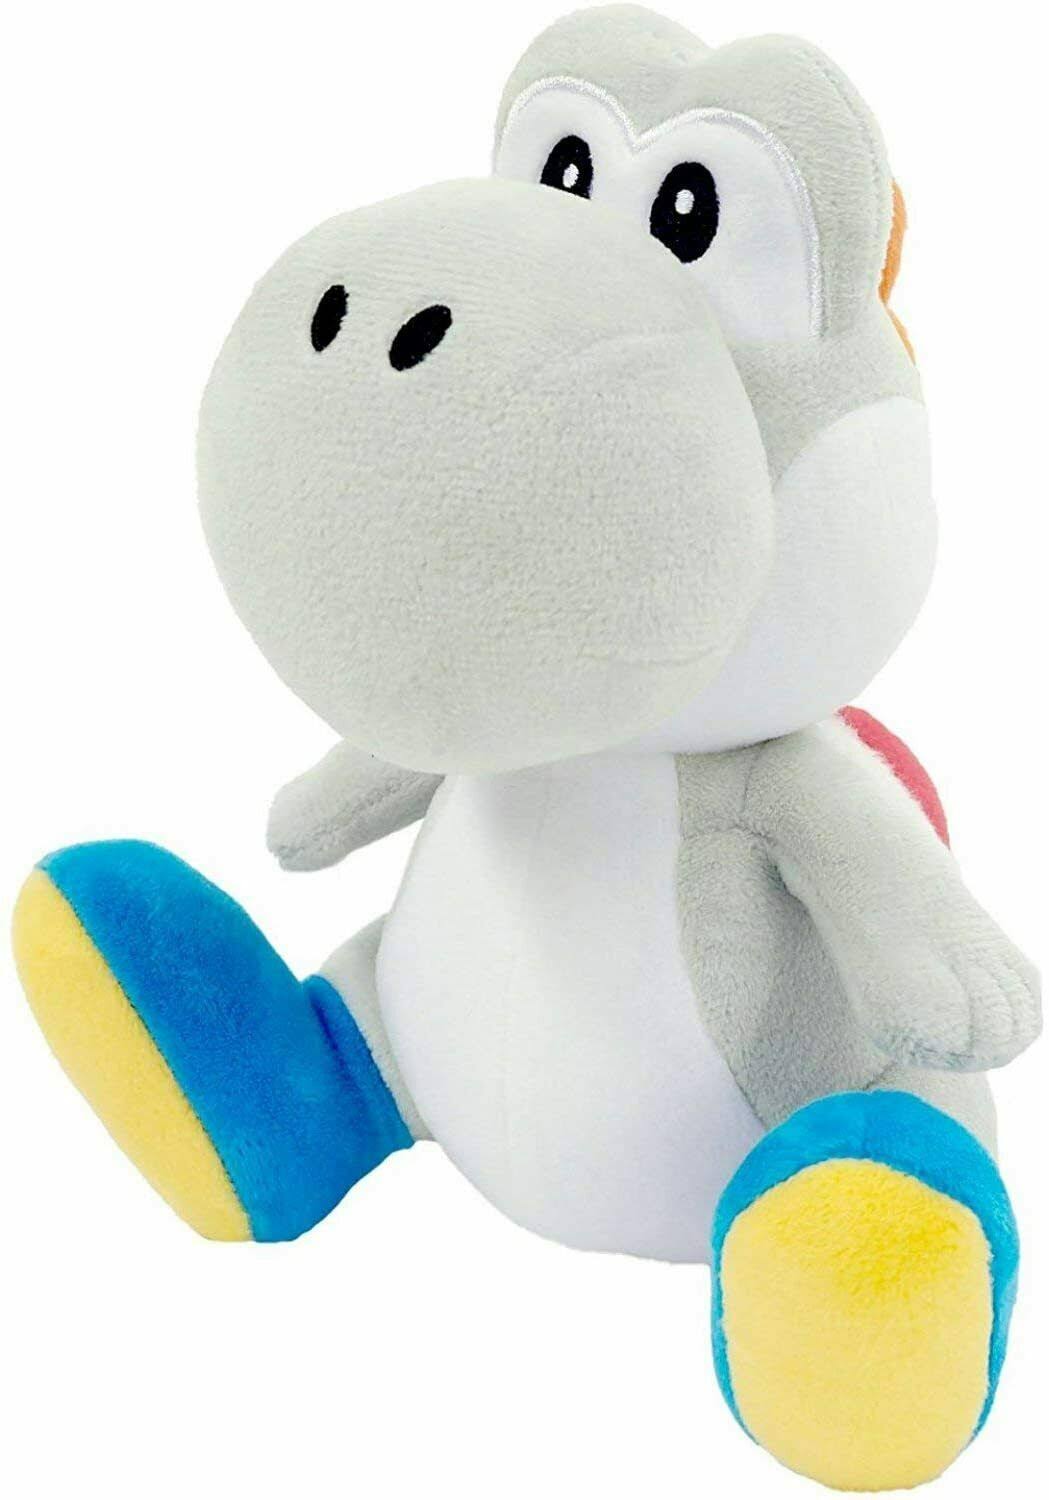 Little Buddy Super Mario Bros. Plush Toy - Yoshi, White, 6"